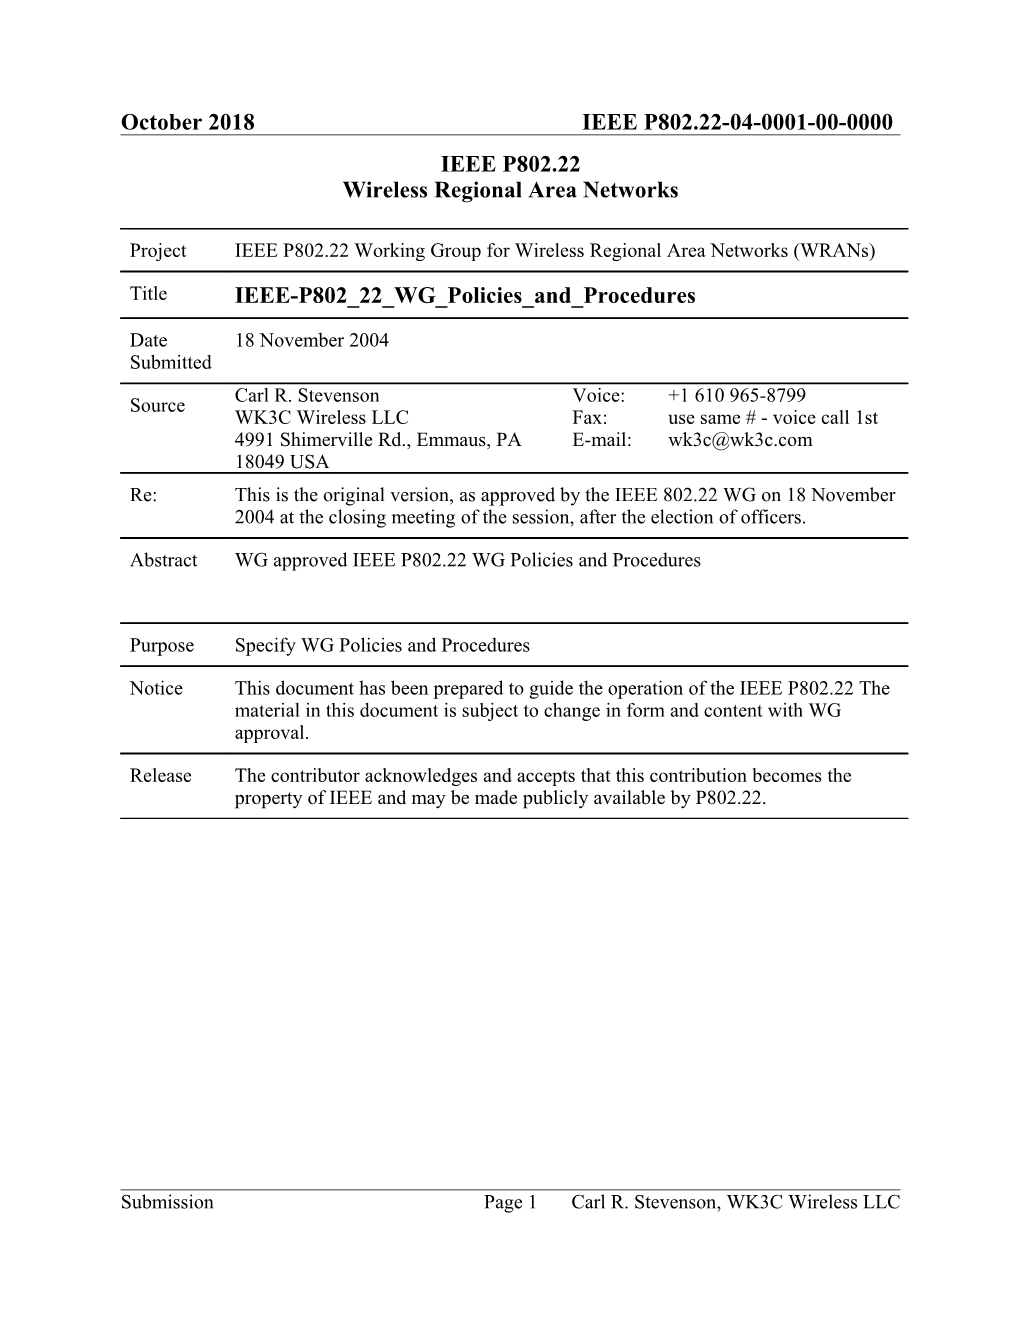 IEEE-P802 22 WG Policies and Procedures